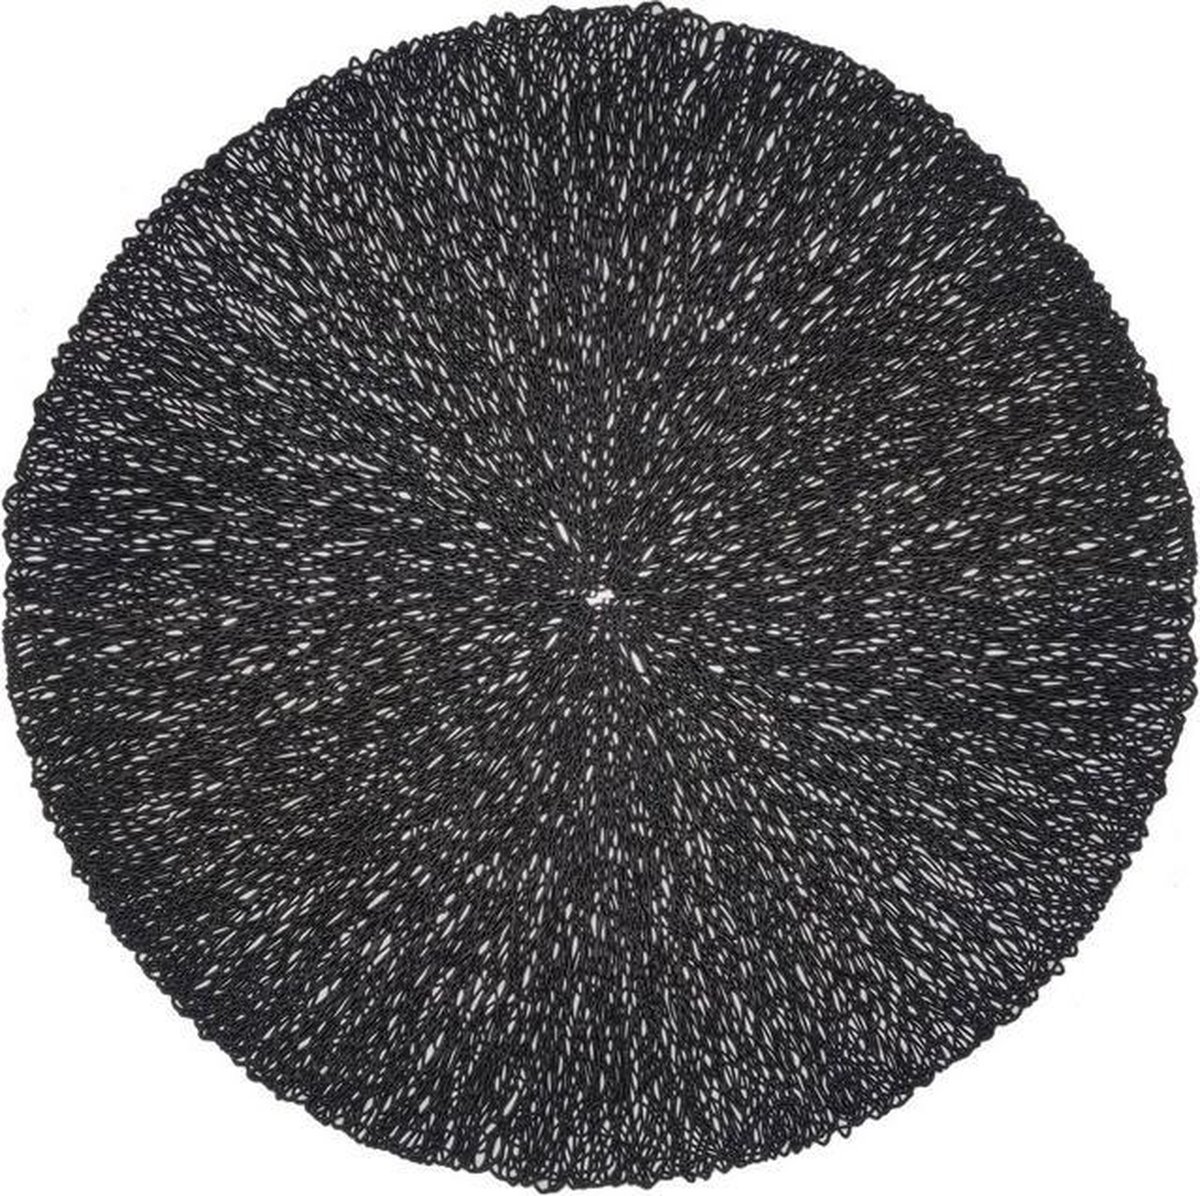 4x Zwarte Placemat Rond - Coral Black - Zwart - Decoratie - 38cm rond